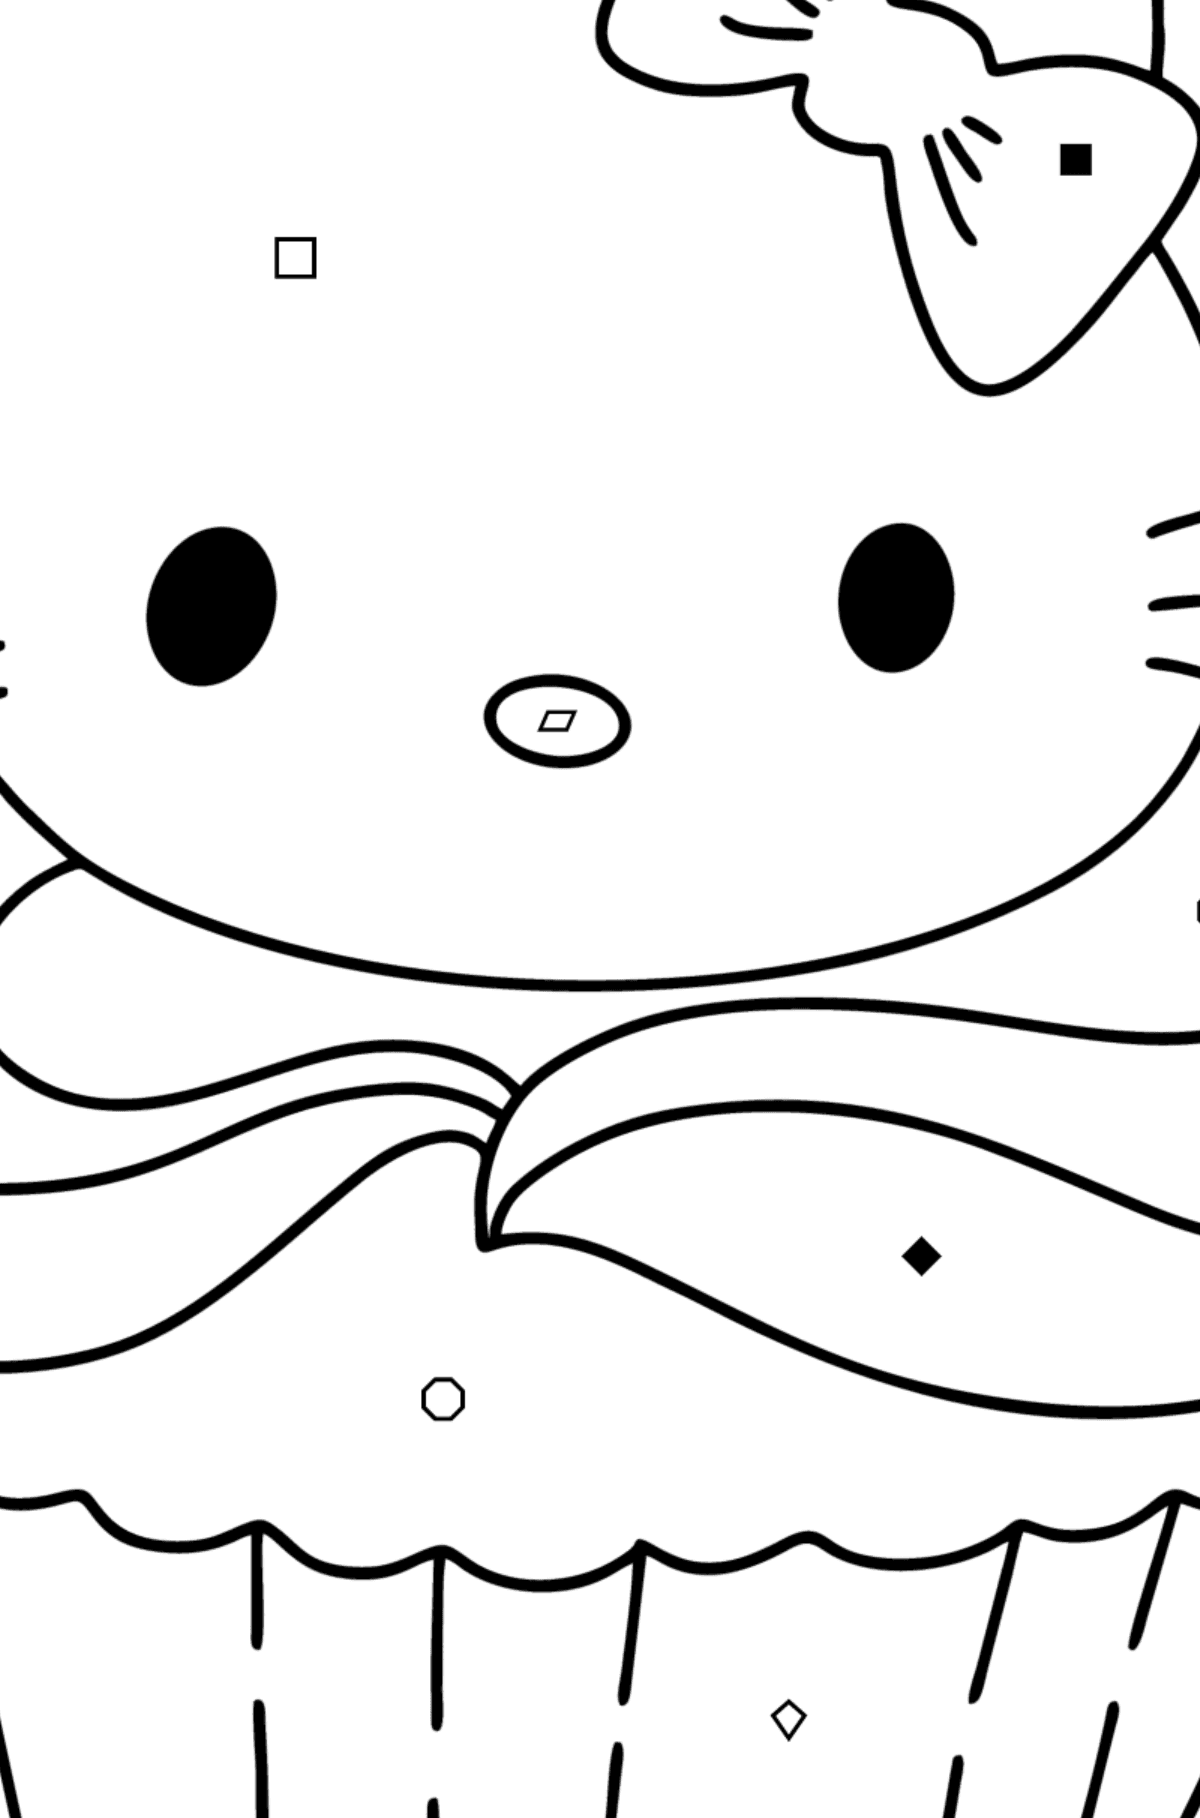 Boyama sayfası Hello Kitty bisküvi - Sembollere ve Geometrik Şekillerle Boyama çocuklar için